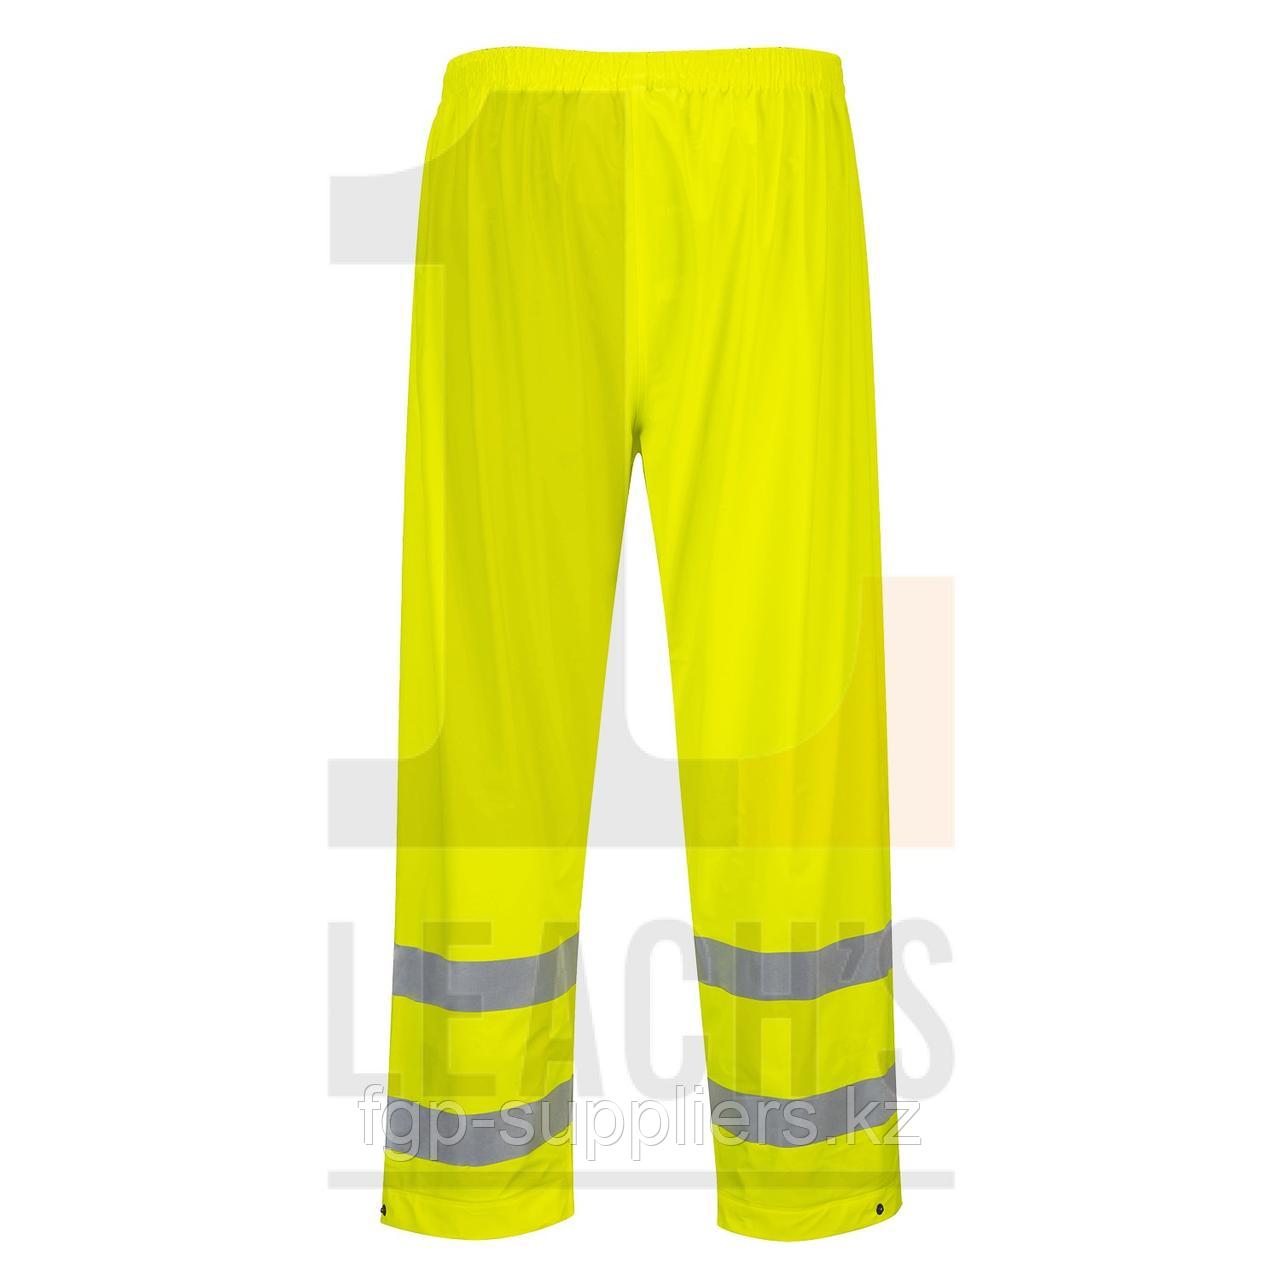 Sealttex Waterproof Hi-Vis Yellow Trousers / Sealttex Водонепроницаемые сигнальные брюки желтого цвета